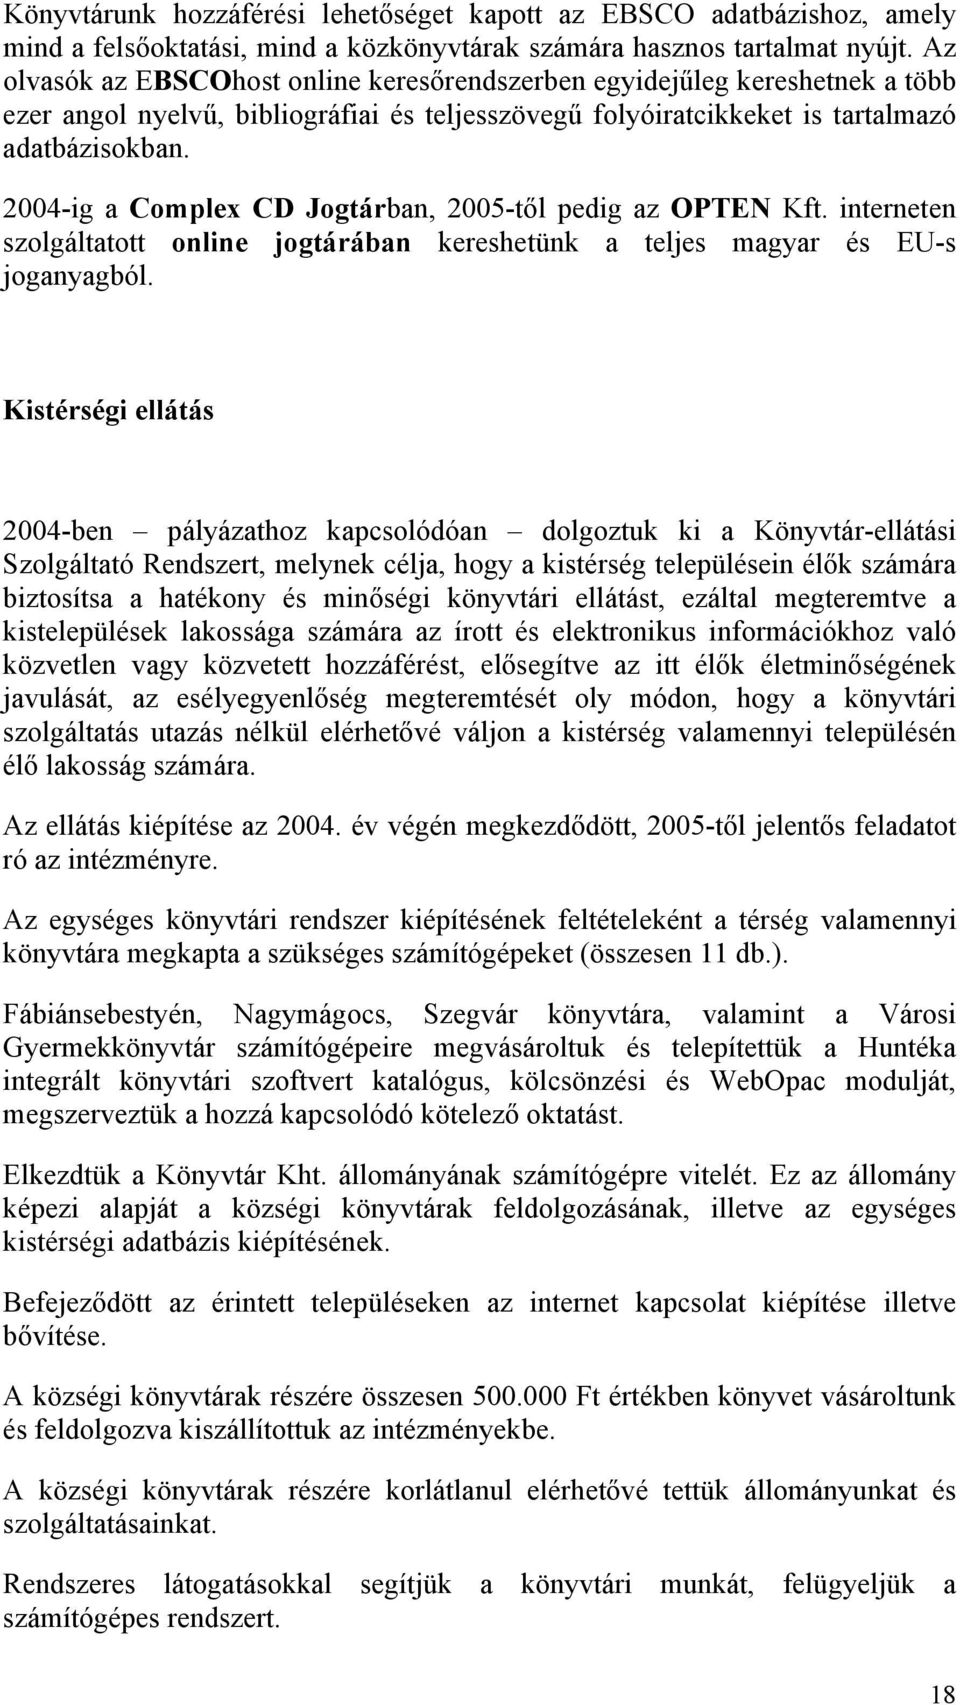 2004-ig a Complex CD Jogtárban, 2005-től pedig az OPTEN Kft. interneten szolgáltatott online jogtárában kereshetünk a teljes magyar és EU-s joganyagból.